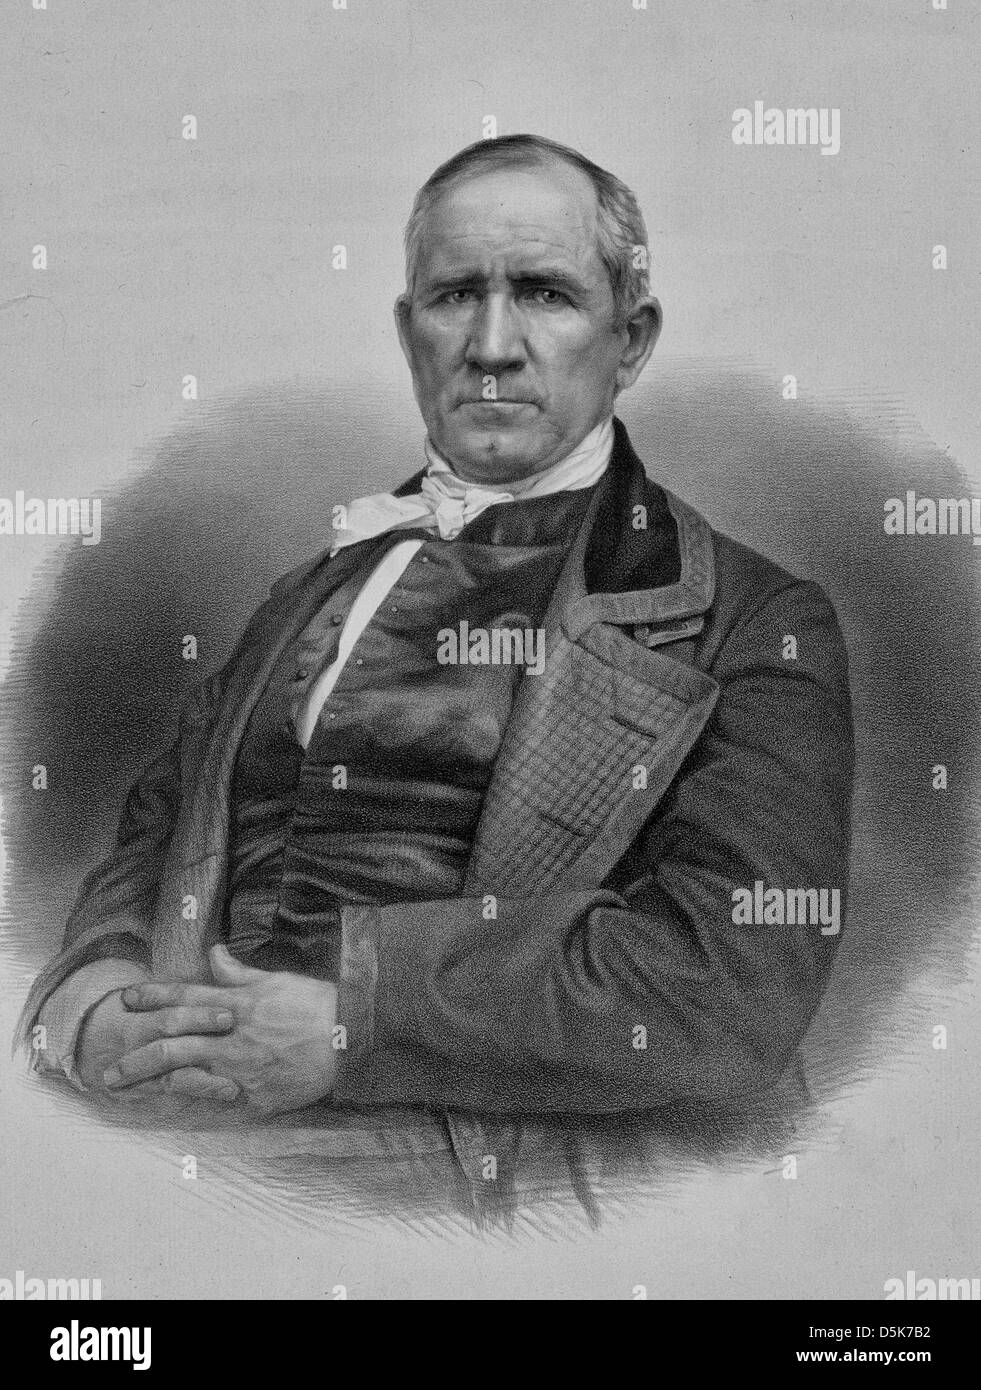 Samuel 'Sam' Houston était un état américain du xixe siècle, homme politique, et de soldat. Il est surtout connu pour son rôle de premier plan dans l'obtention au Texas aux États-Unis, vers 1848 Banque D'Images